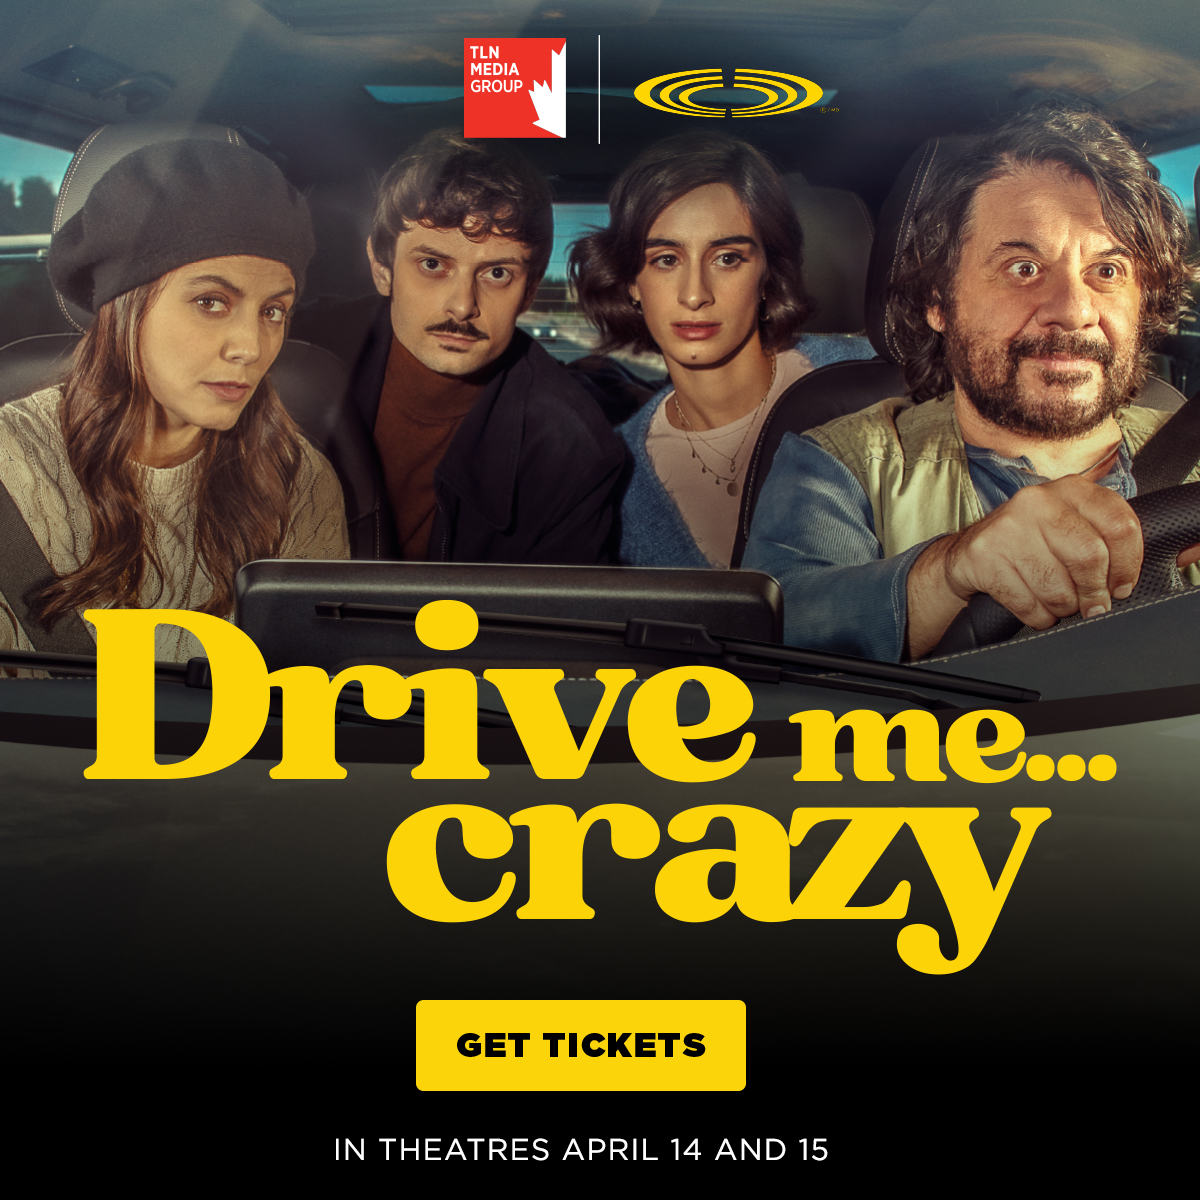 ❗️Do not miss the 🇮🇹📽️ “Drive me crazy”(Con chi viaggi), starring Michela De Rossi, Pasquale Petrolo, Alessandra Mastronardi, and Fabio Rovazzi. 🗓️April 14 & 15 in all 🎞️@CineplexMovies across Canada 🇨🇦 thanks to @TLNTV